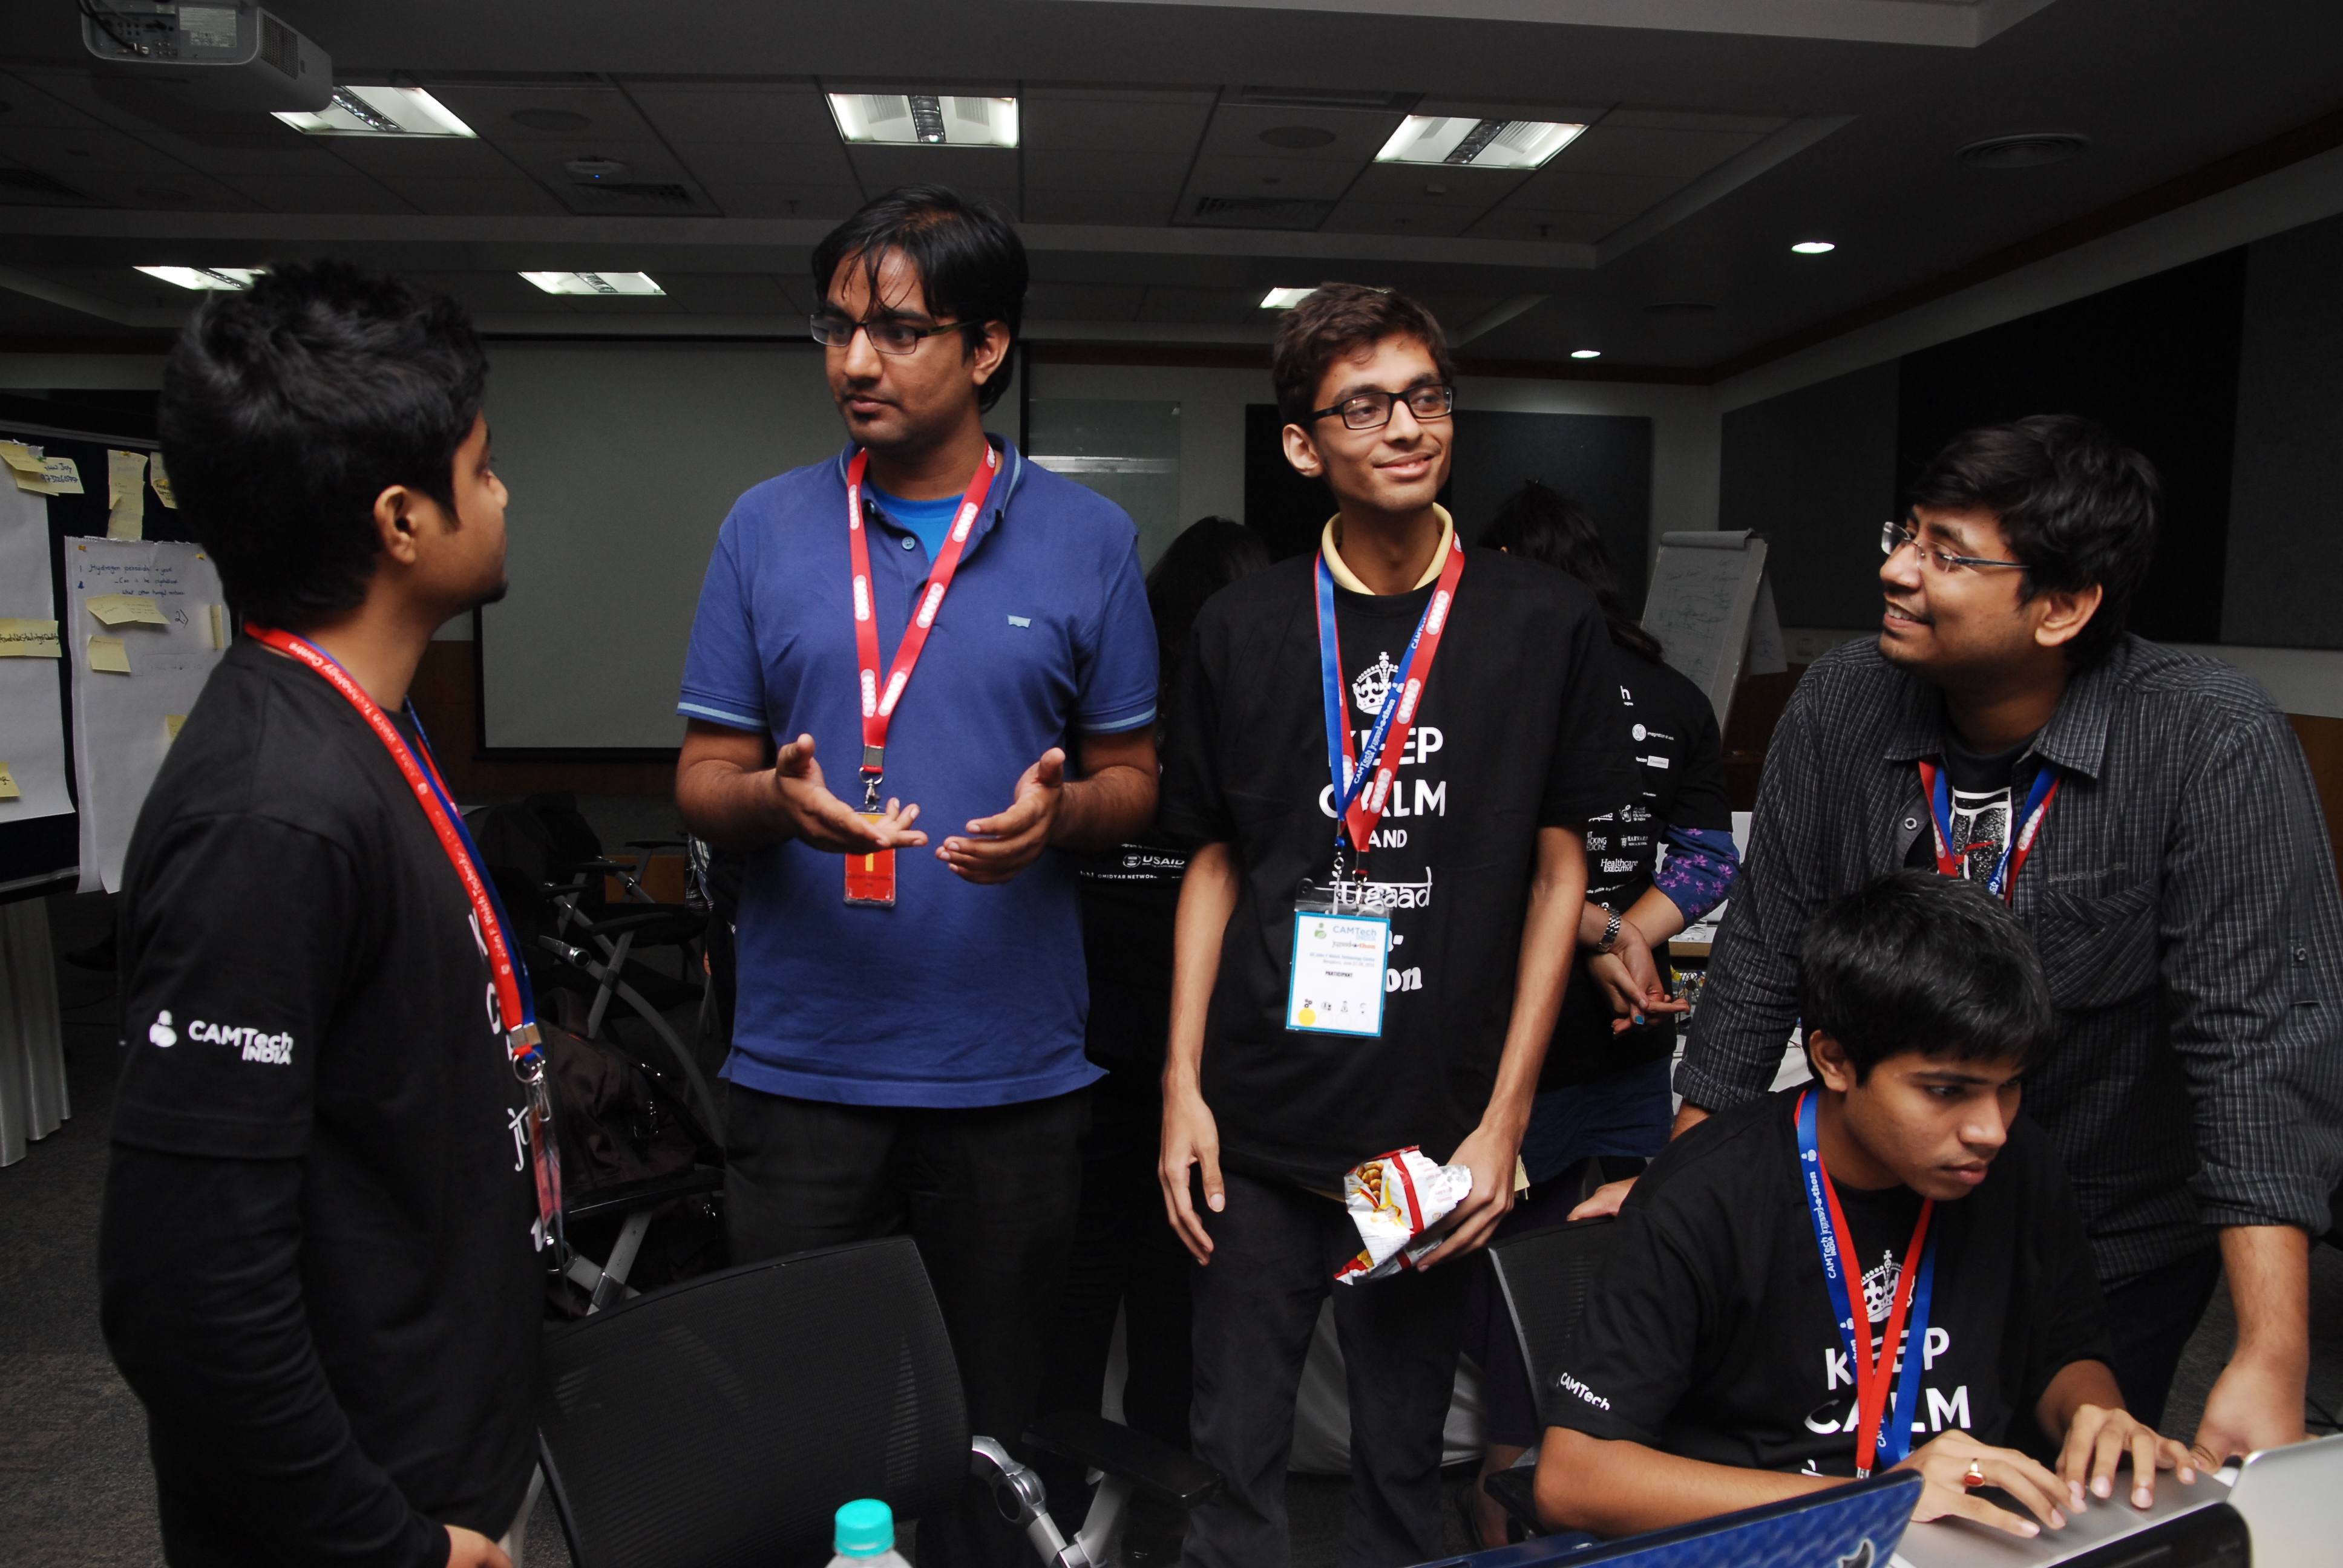 The team at Jugaadathon.